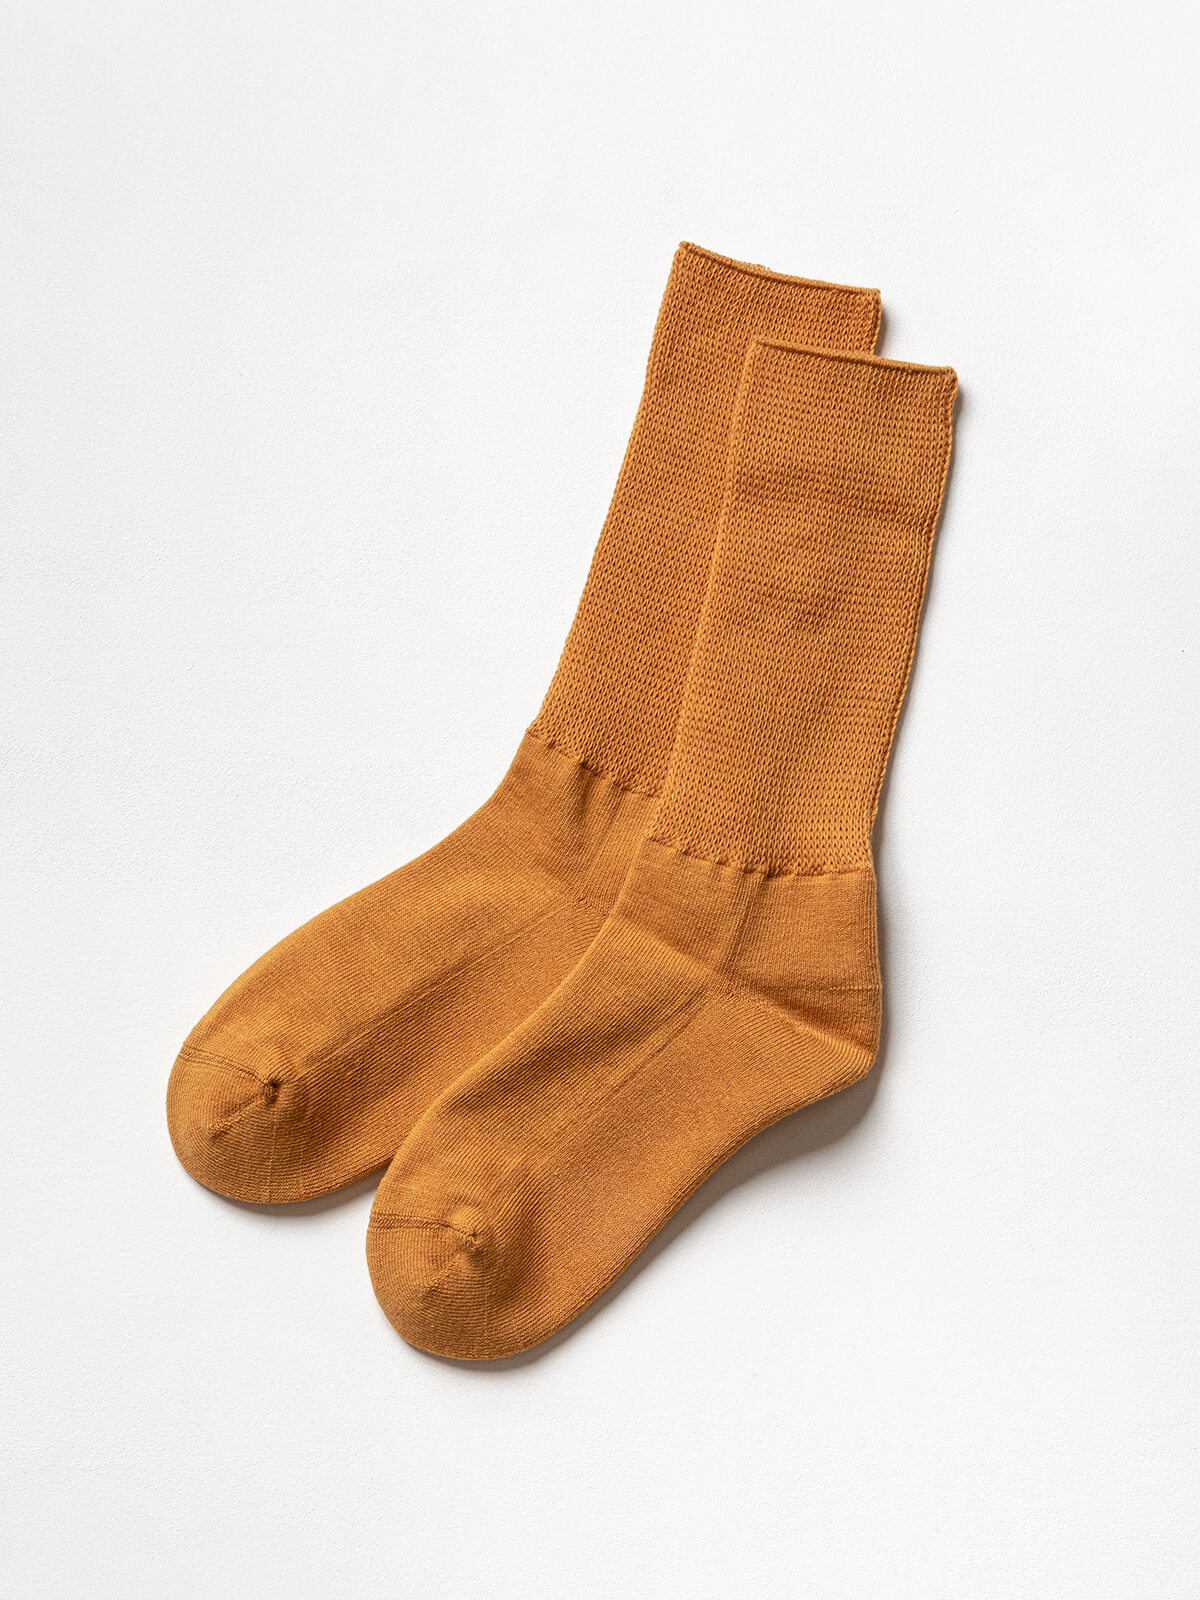 当たりつきギフト専用靴下のLUCKY SOCKS（ラッキーソックス）のRelax Pile Socks（リラックスパイルソックス）のオレンジ